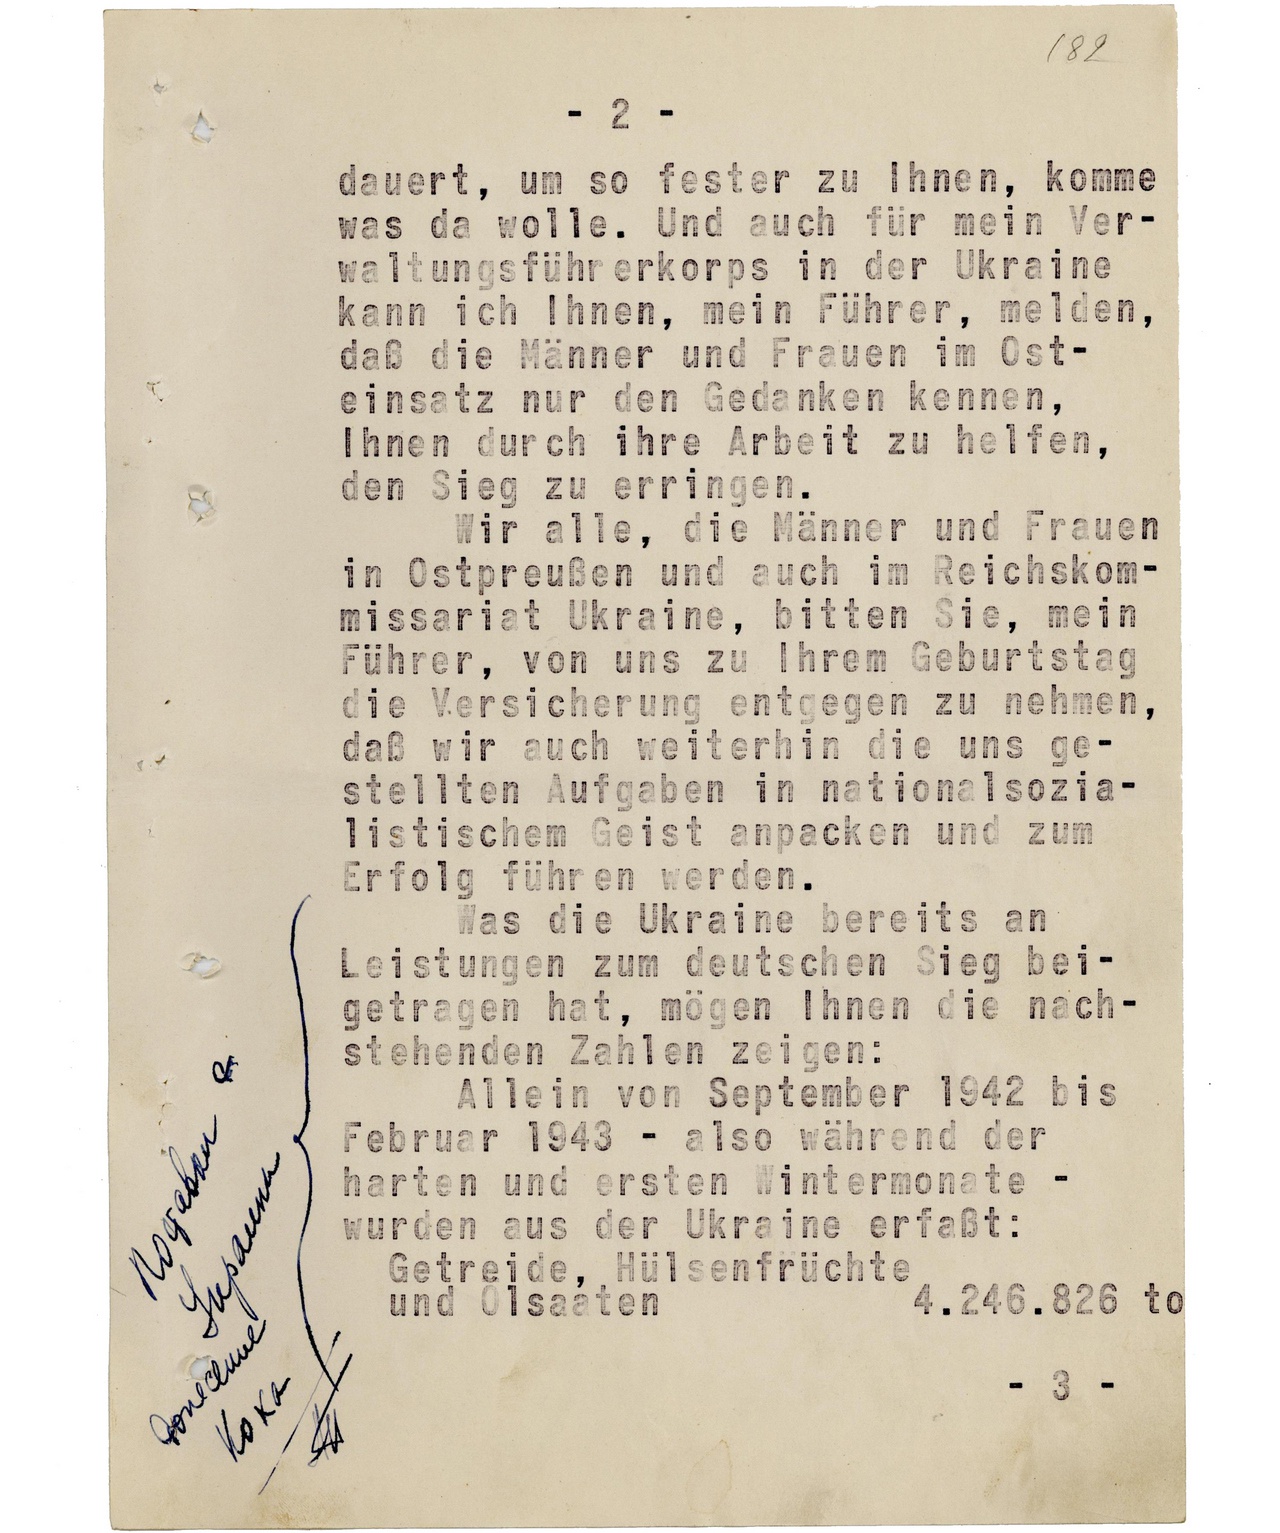 Телеграмма Коха Гитлеру от 20 апреля 1943 г. Стр. 2.